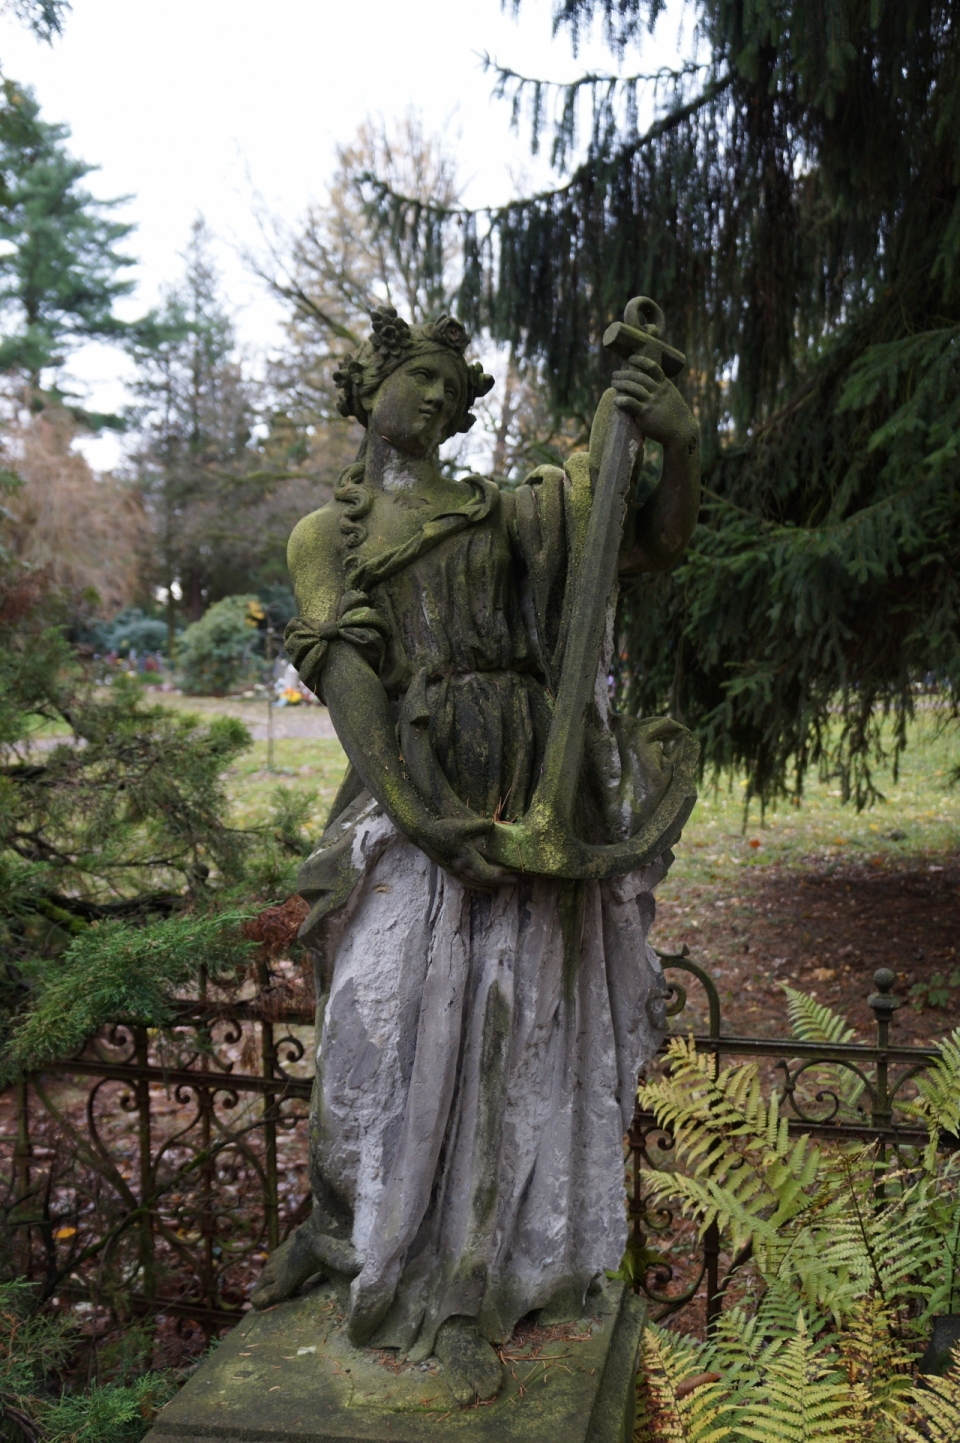 绿色树木围栏前抱着船锚的妇女雕像